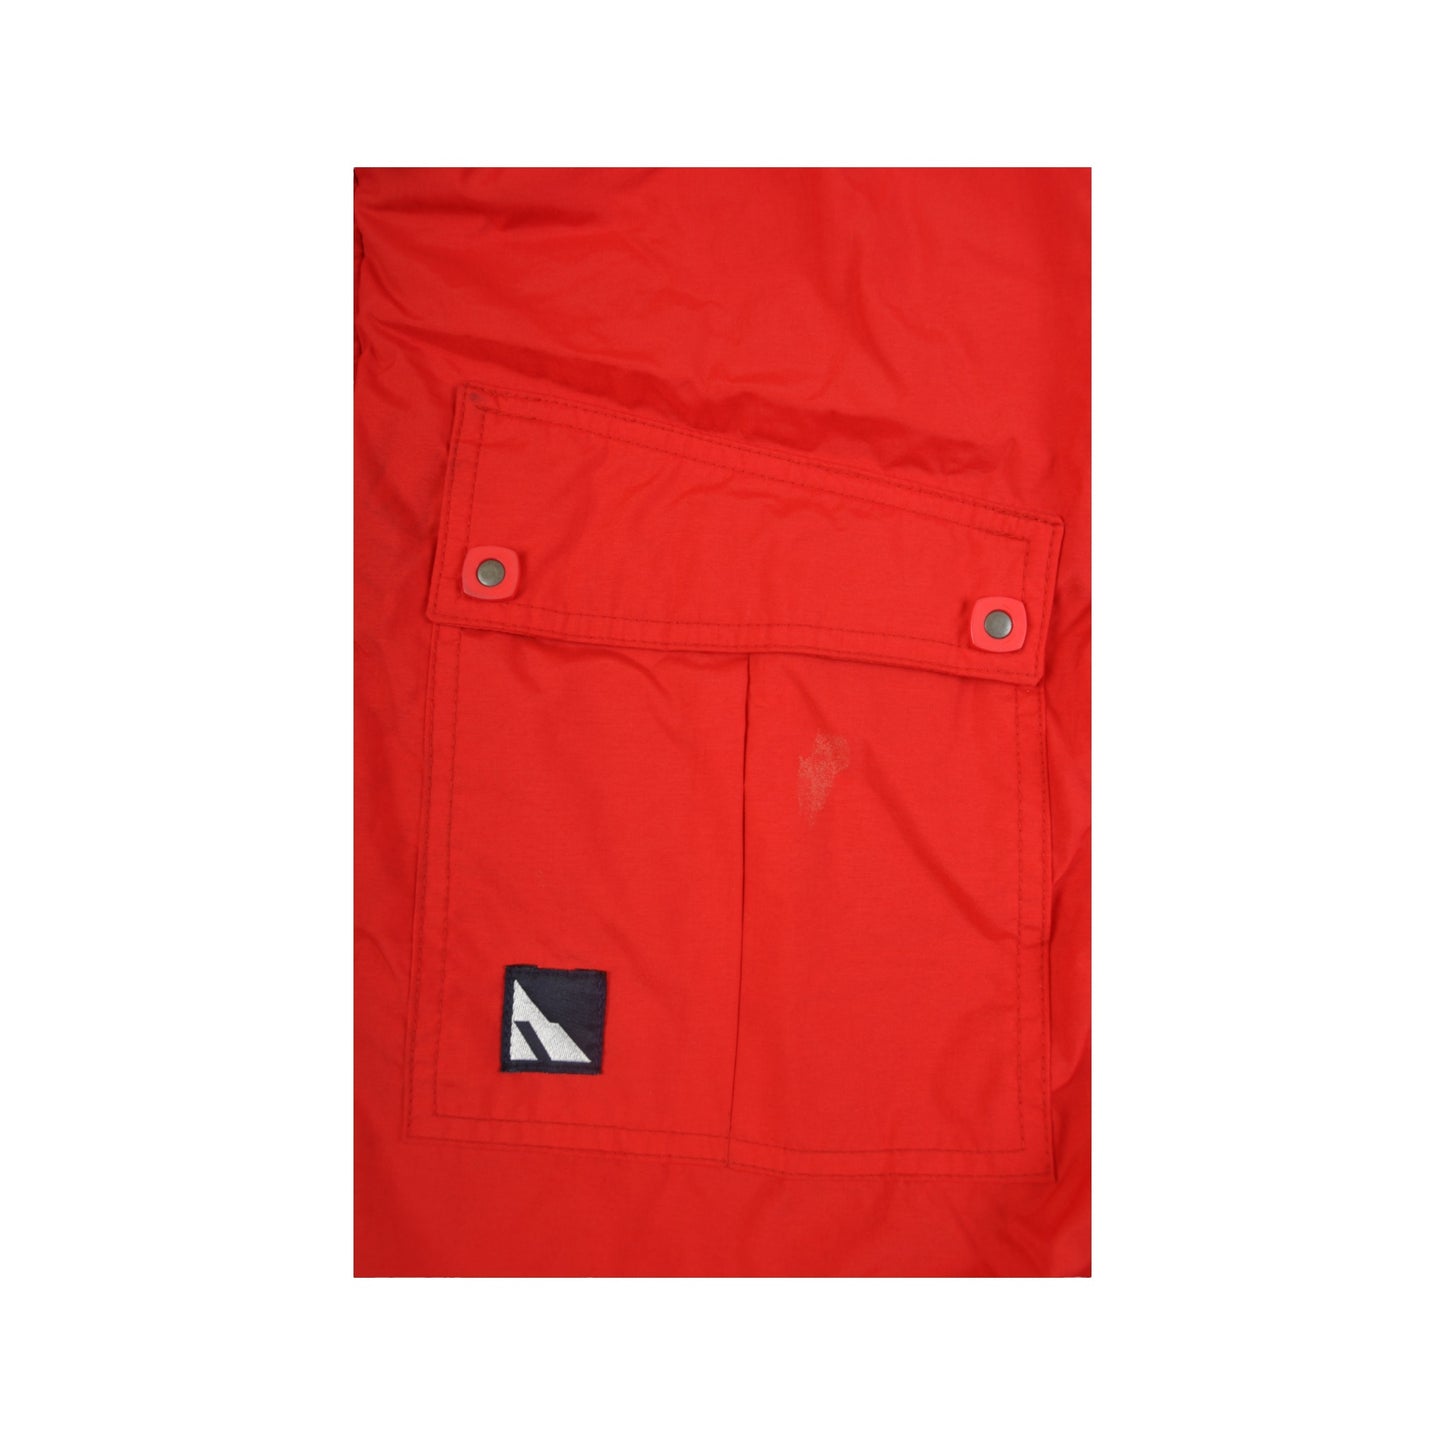 Vintage Ski Jacket Retro Block Colour Red XL